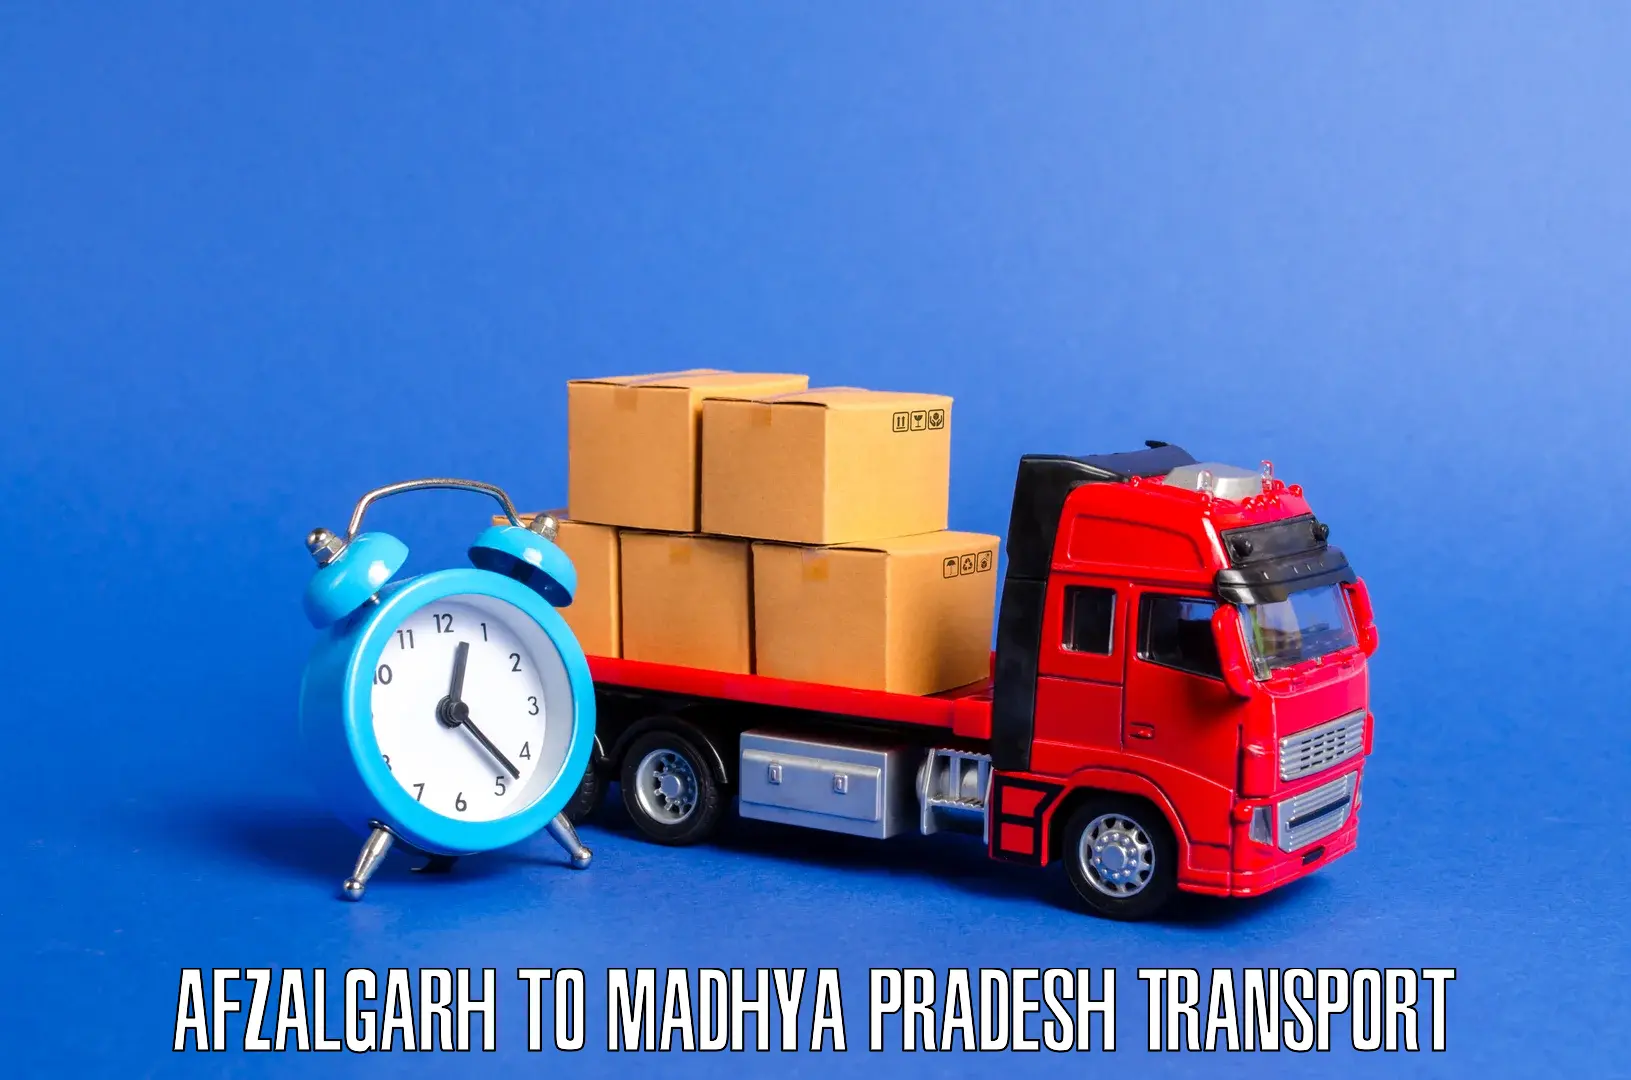 Transportation services Afzalgarh to Lashkar